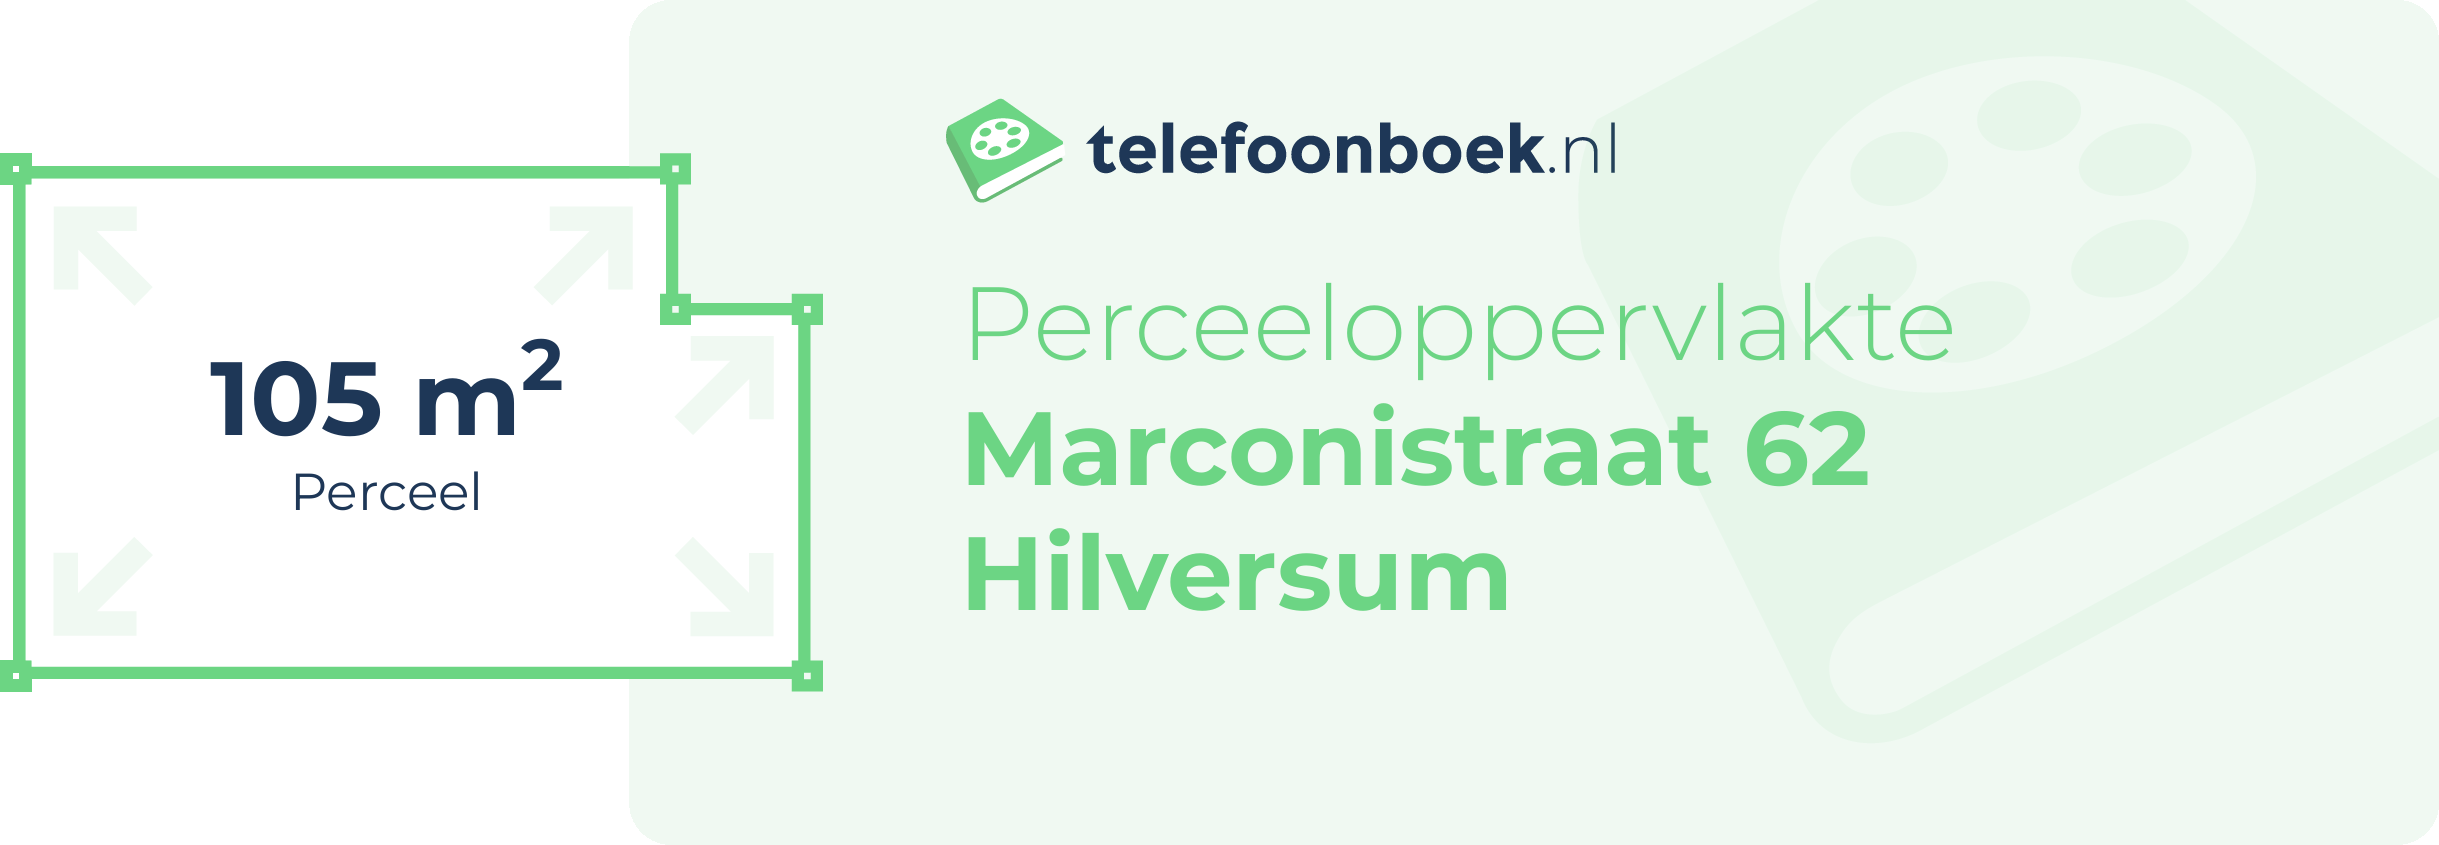 Perceeloppervlakte Marconistraat 62 Hilversum